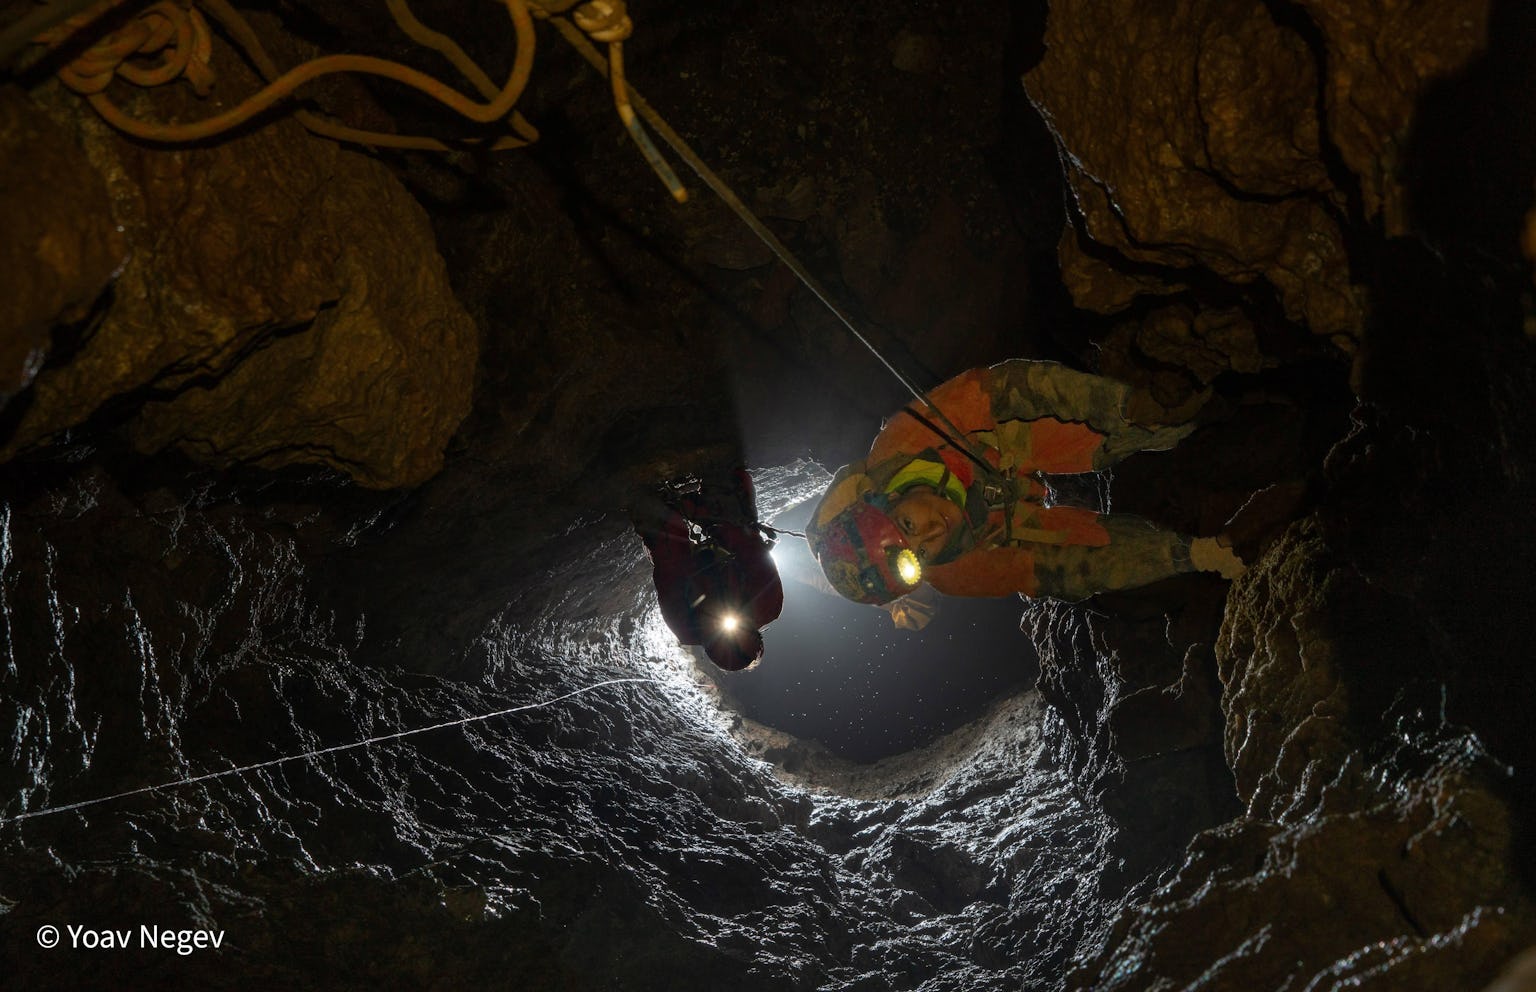 Στέρνες: Μία διεθνής σπηλαιολογική εξερευνητική αποστολή έφερε στο φως... ένα θαύμα της φύσης!